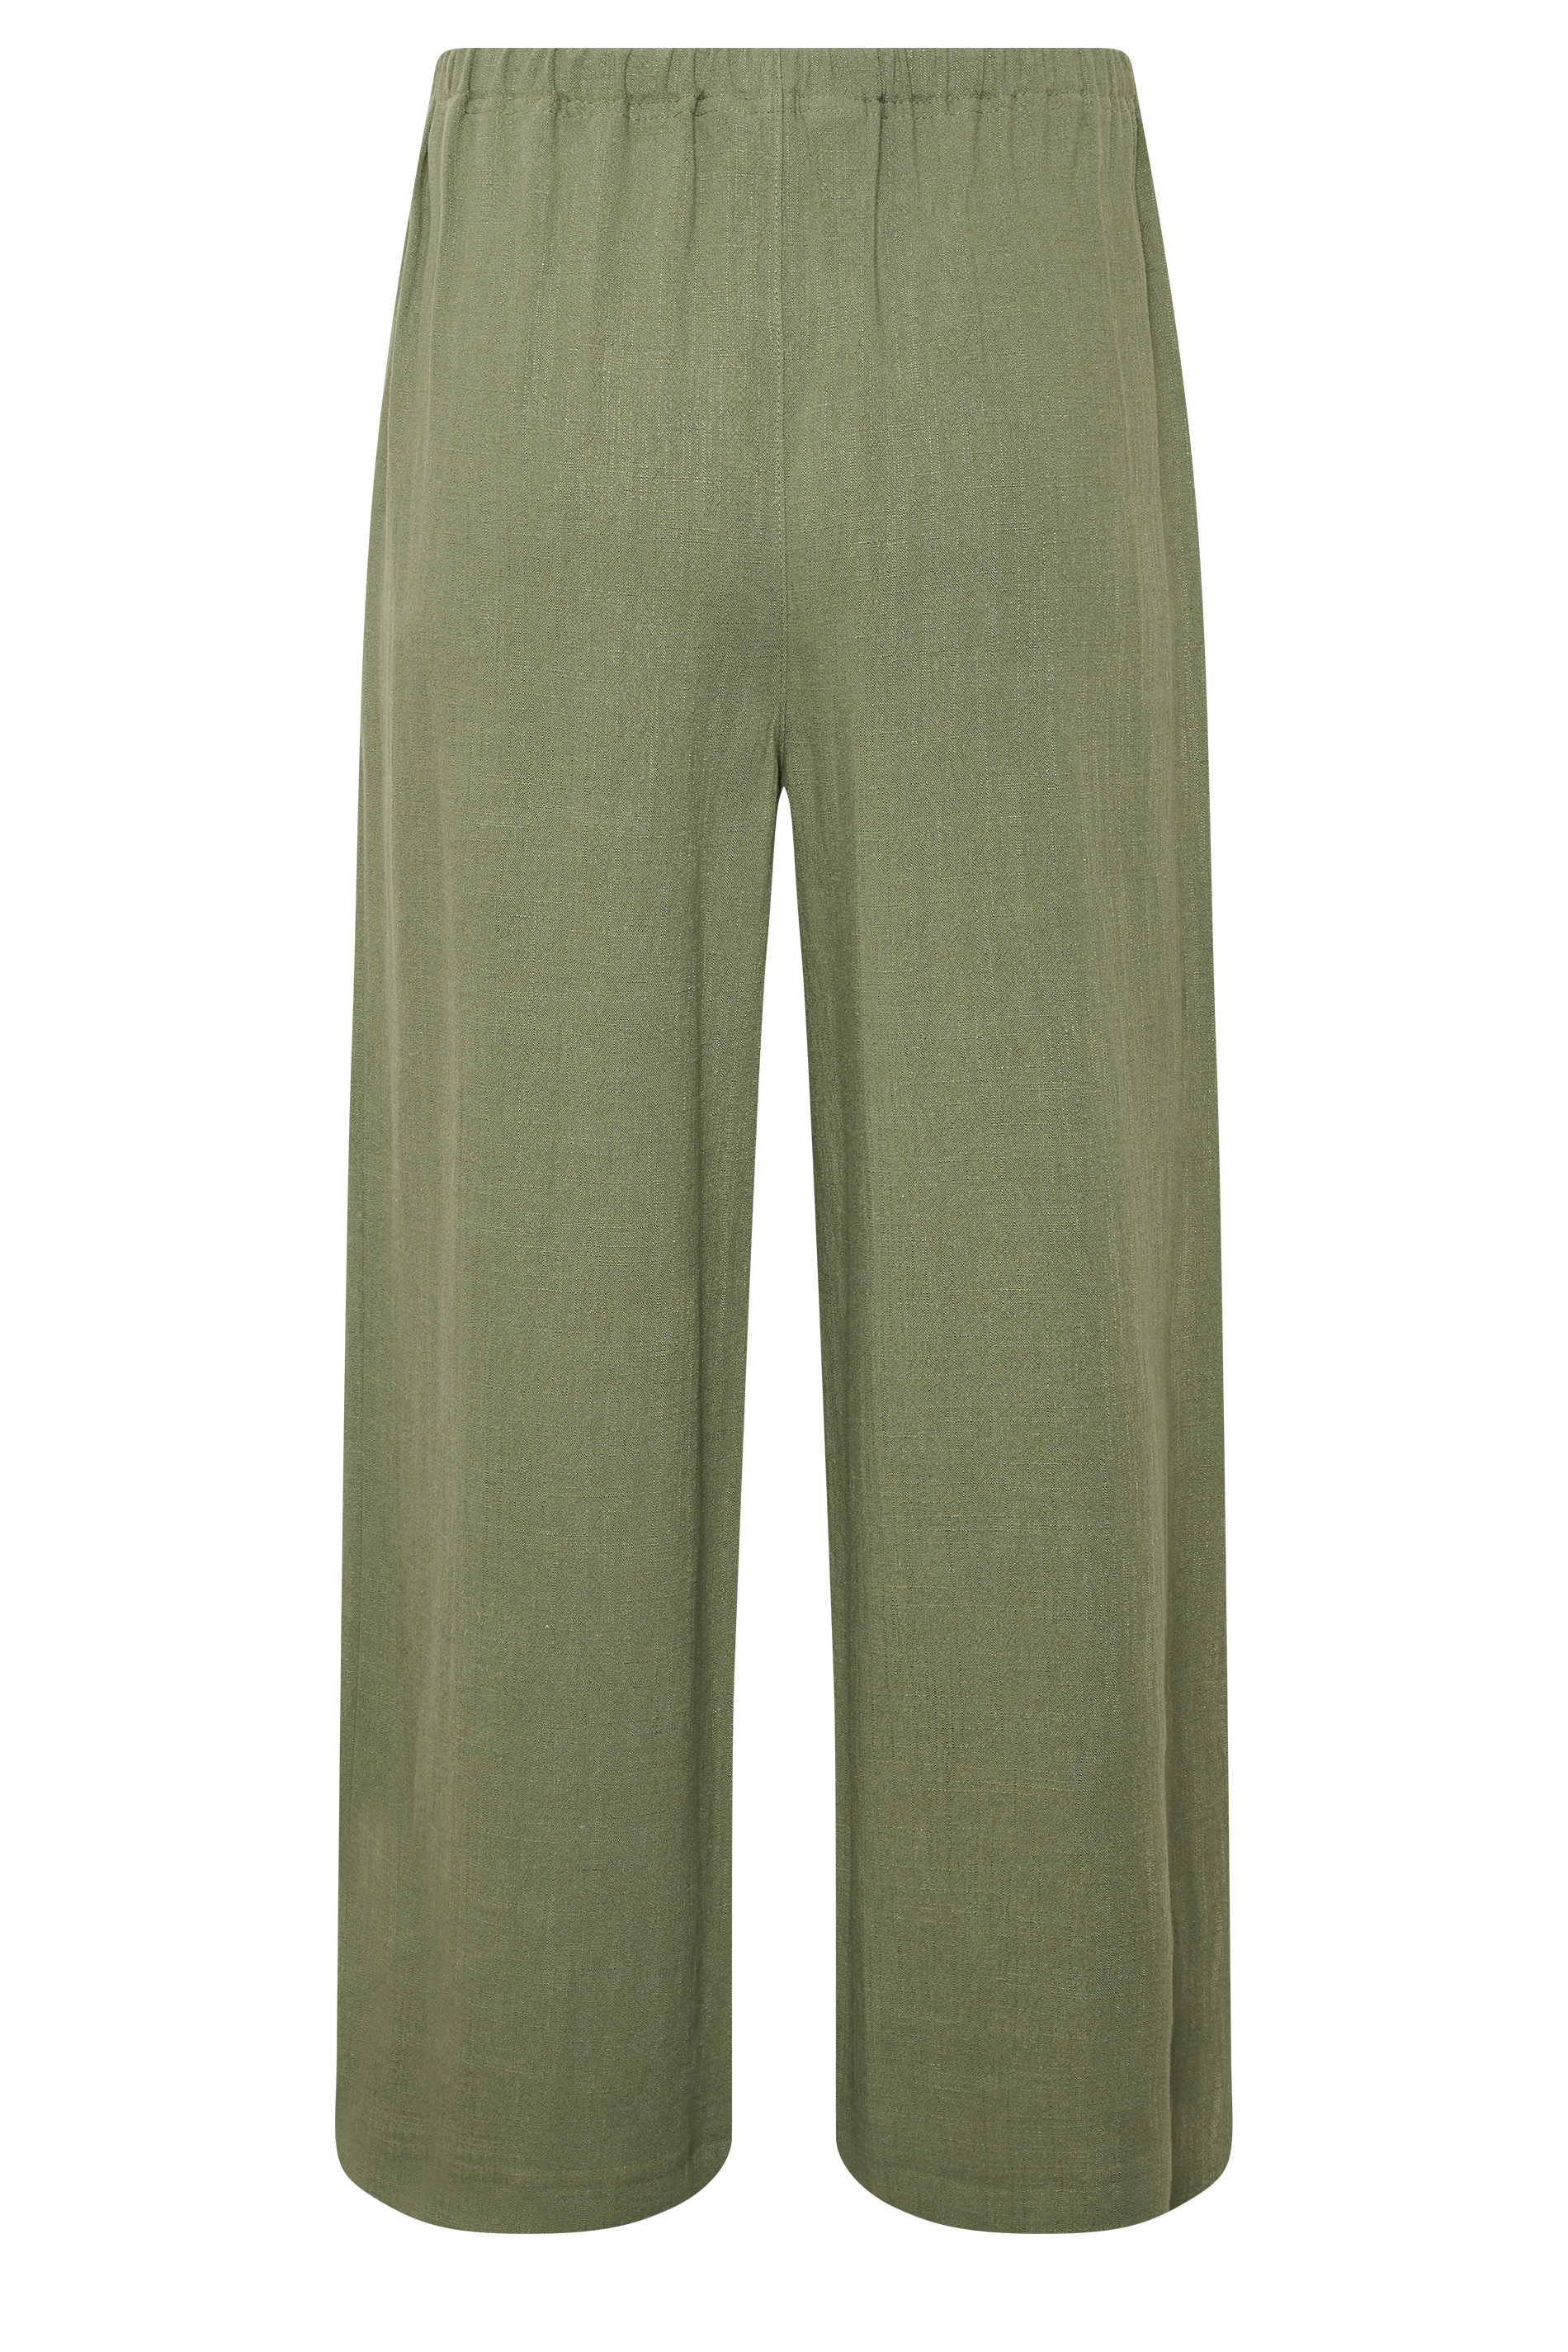 LTS Tall Women's Khaki Green Linen Tie Waist Cropped Trousers | Long Tall Sally  3